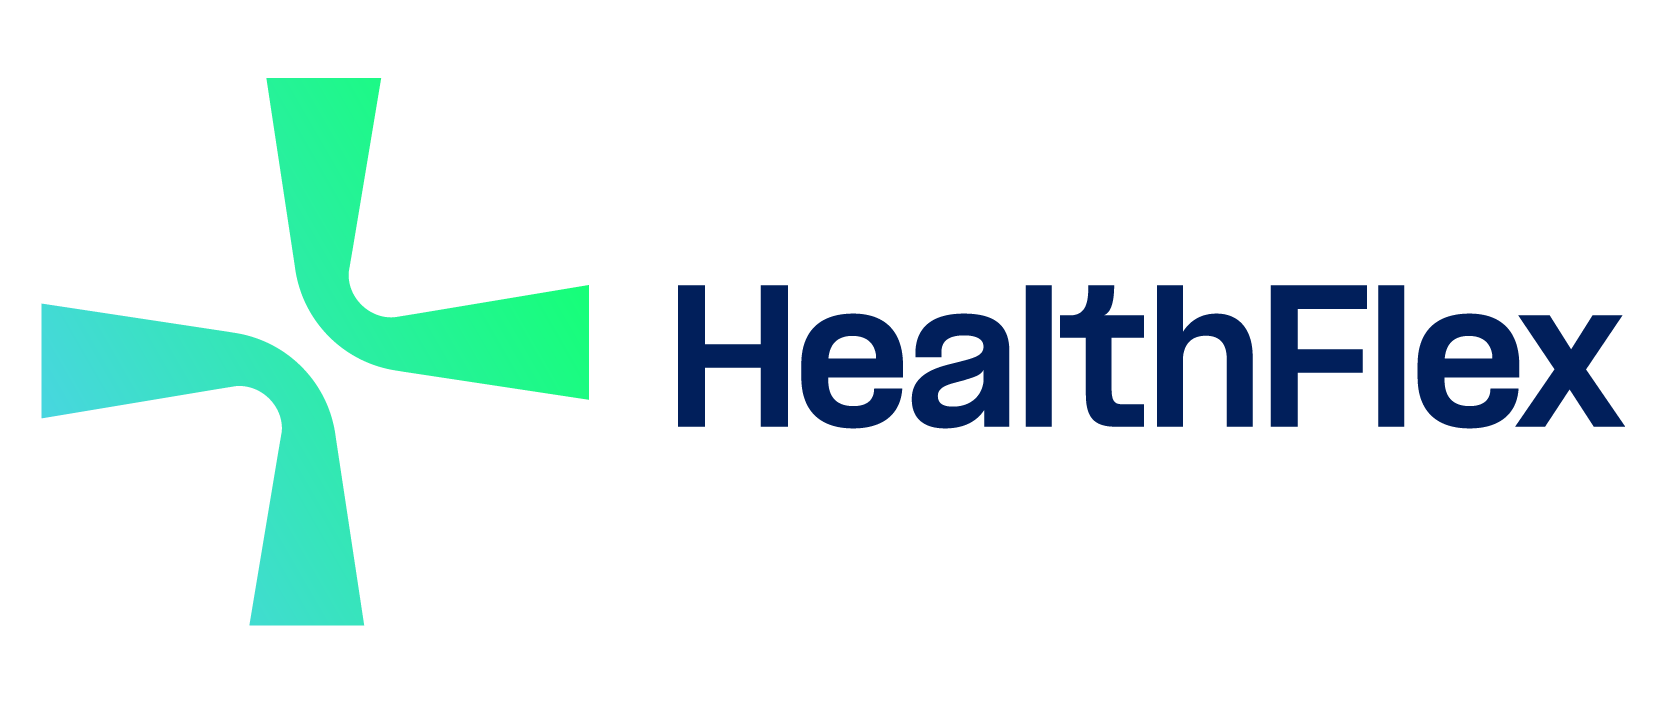 Healthflex  logo color